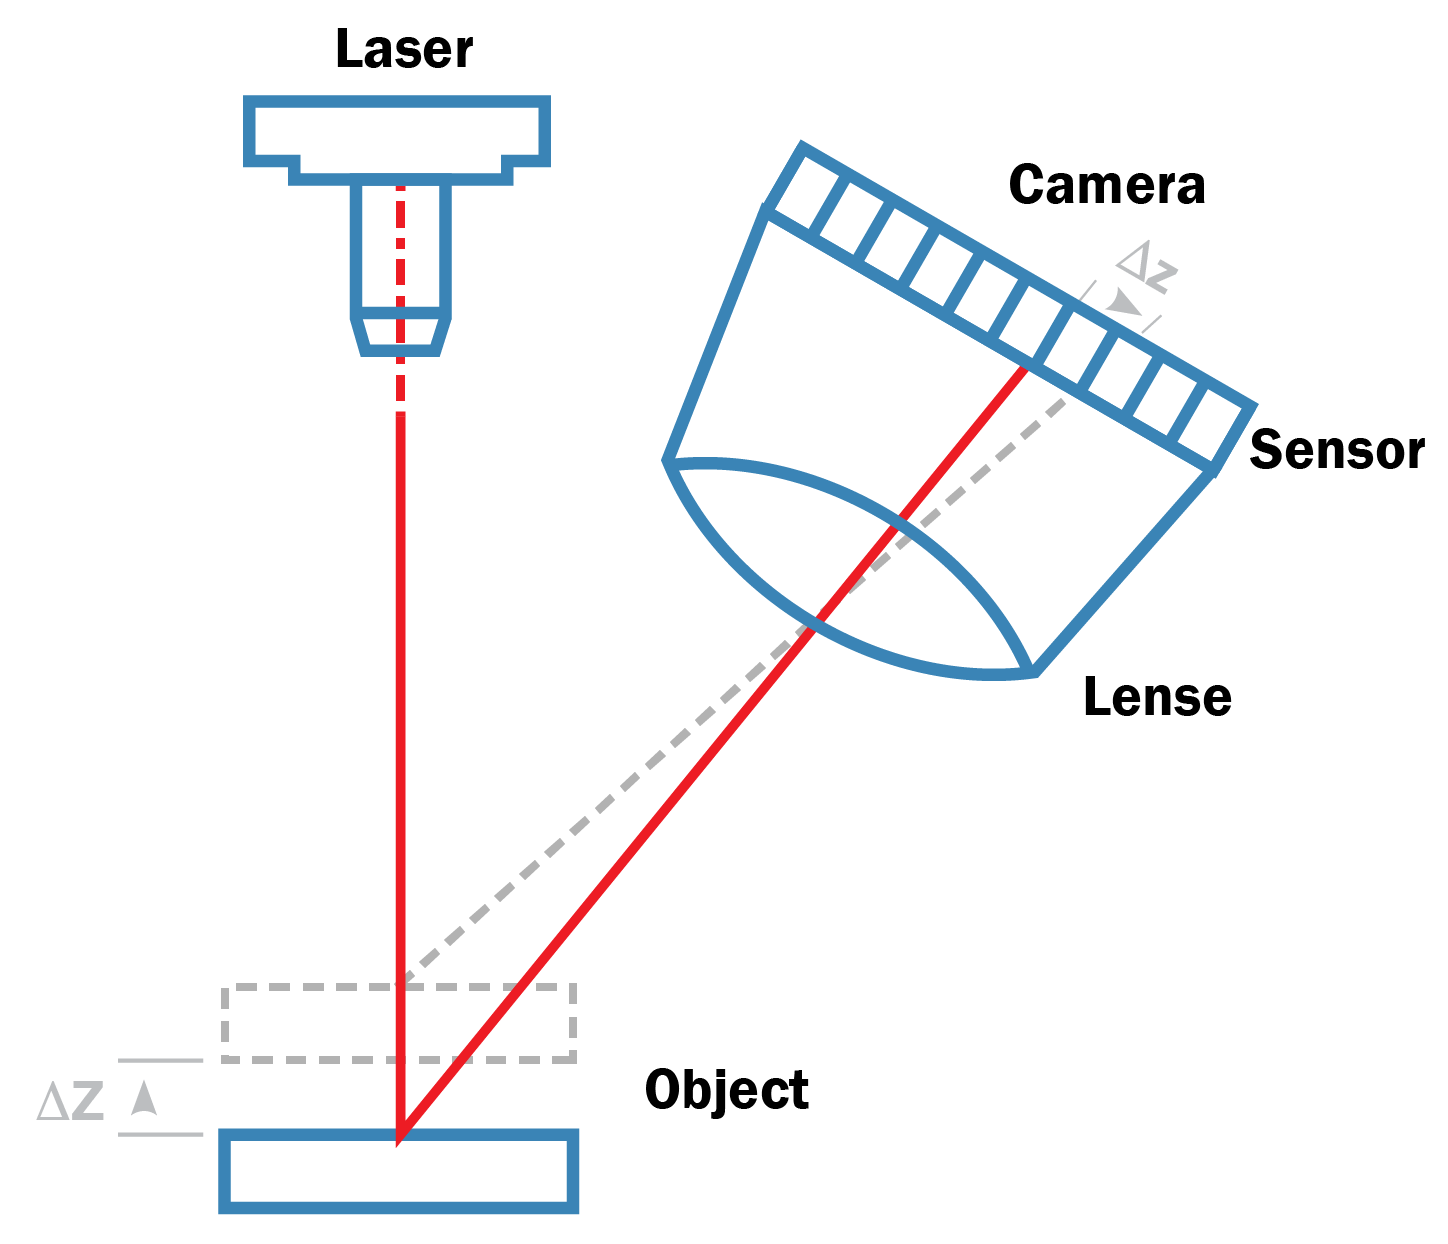 La tecnica basata sulla triangolazione prevede un triangolo composto dall'emettitore laser, dal riflesso del laser sull'oggetto e dalla camera che rileva il riflesso del laser.